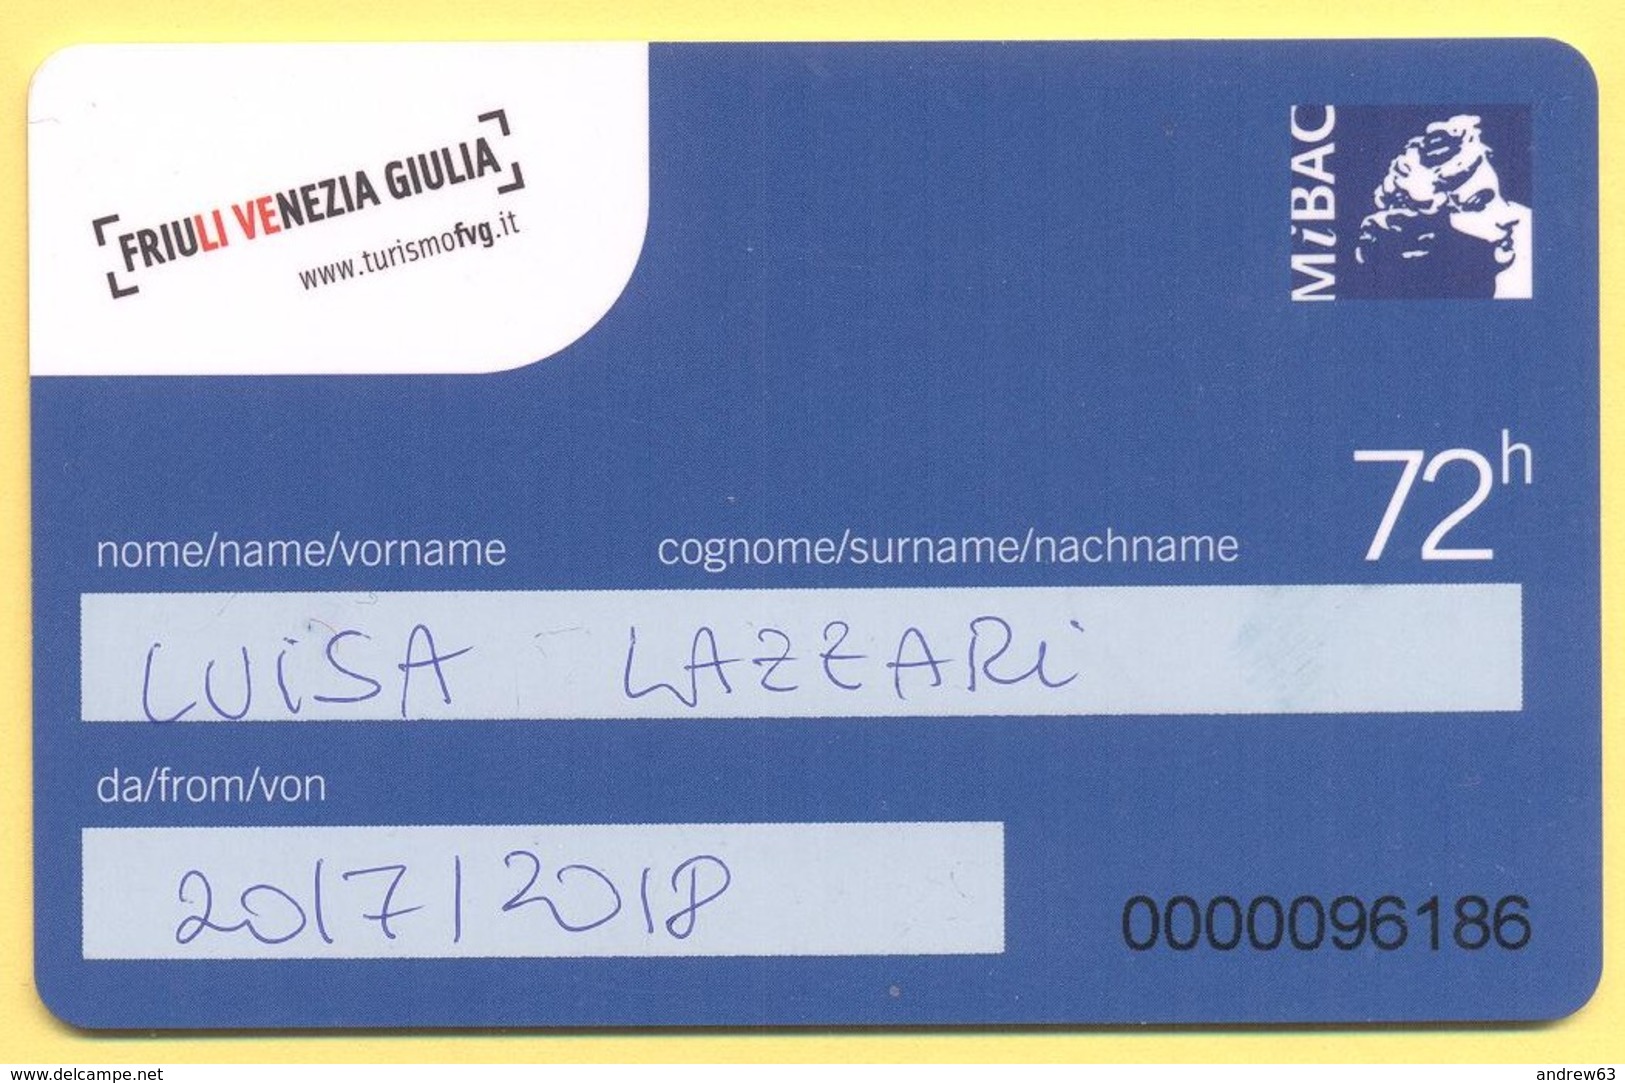 FRIULI VENEZIA GIULIA - FVG Card - Ingresso Forfettario Per 72 Ore - Tickets - Vouchers